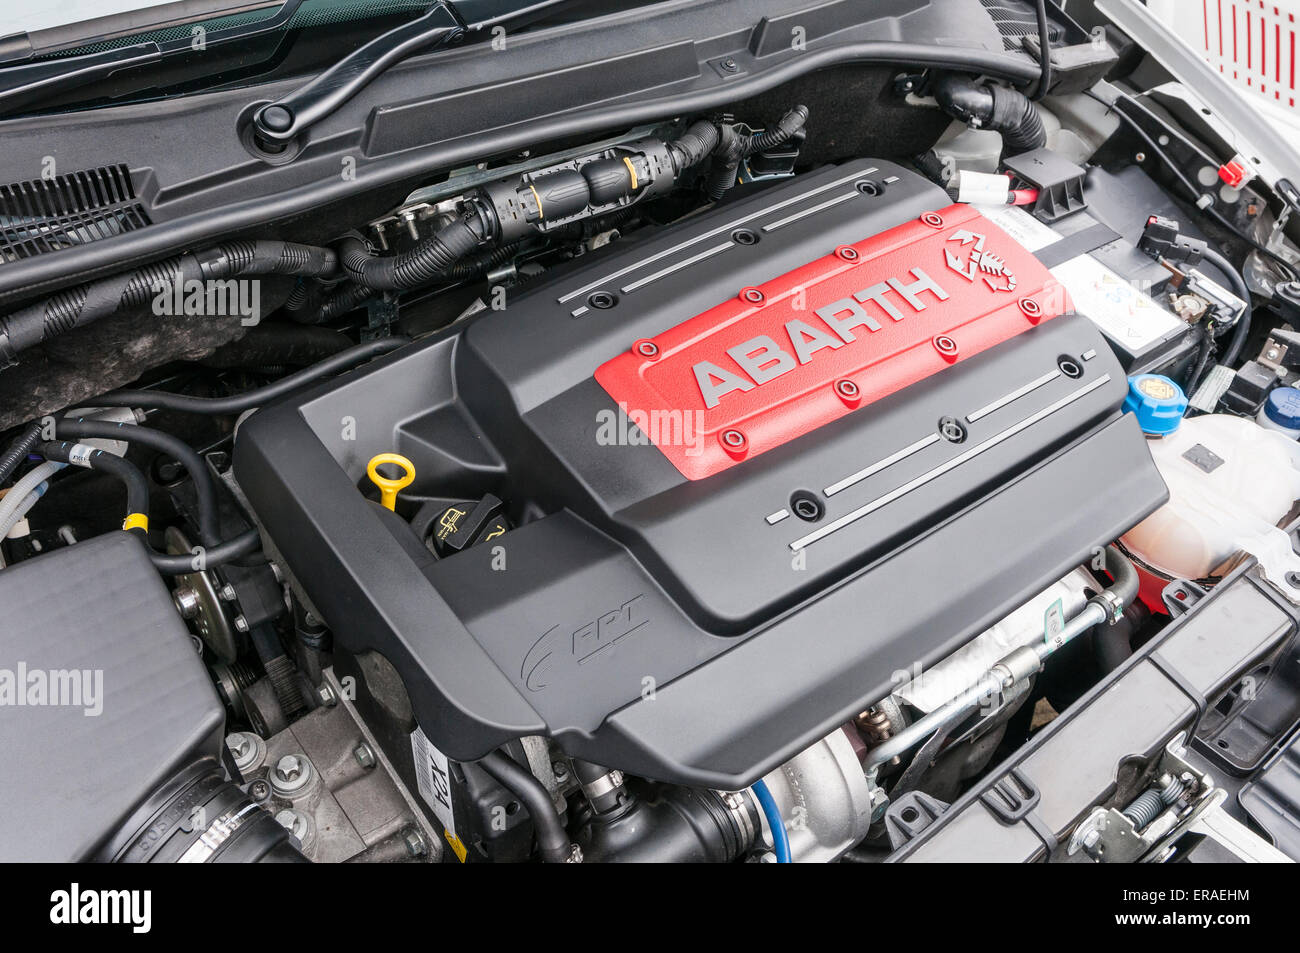 Obere Abdeckung des ein Abarth-Motor in einem Fiat 500 Abarth  Stockfotografie - Alamy